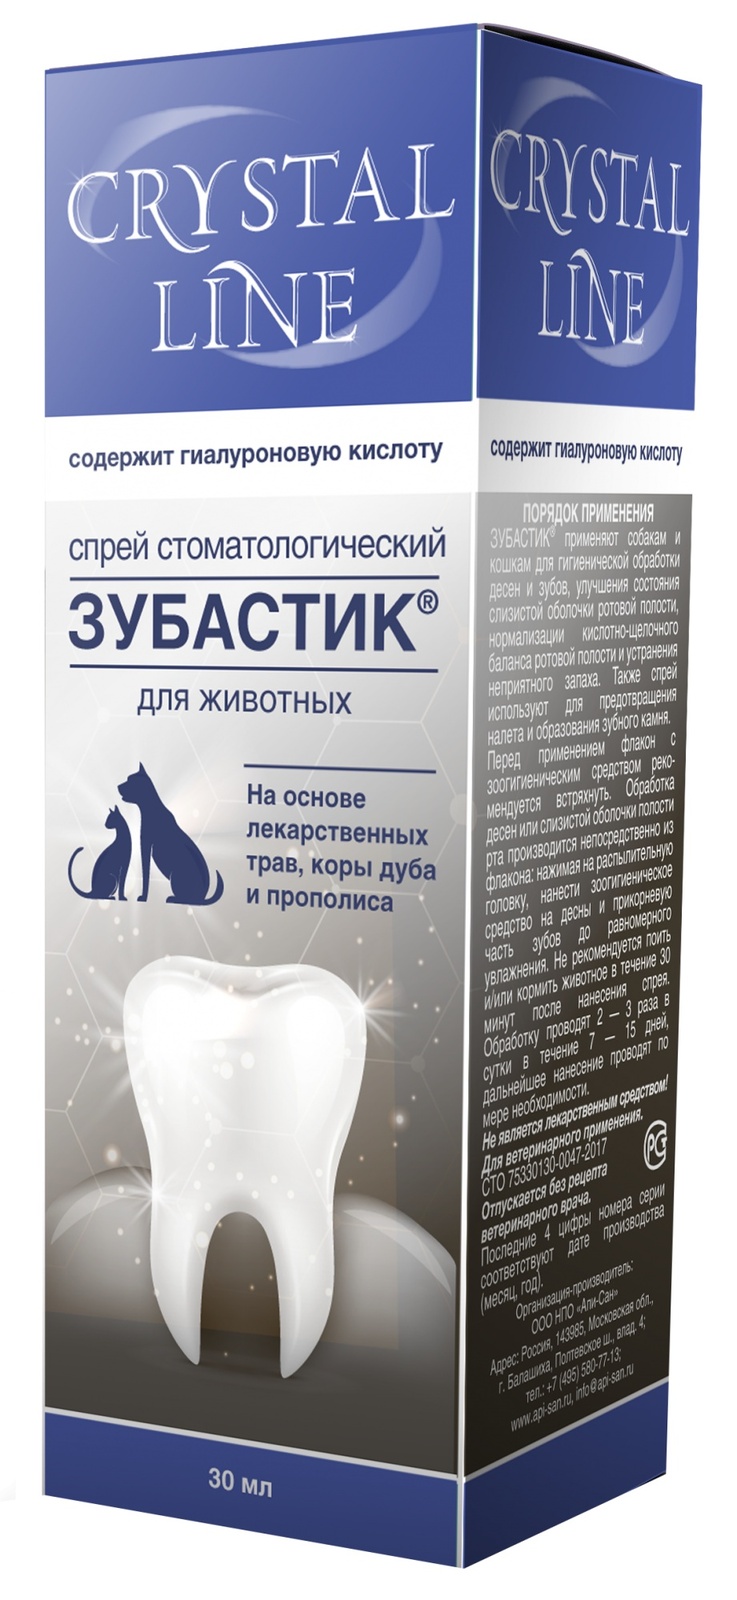 Apicenna Apicenna зубастик спрей для чистки зубов Crystal line (30 г) apicenna crystal line зубастик спрей стоматологический для кошек и собак 30 мл